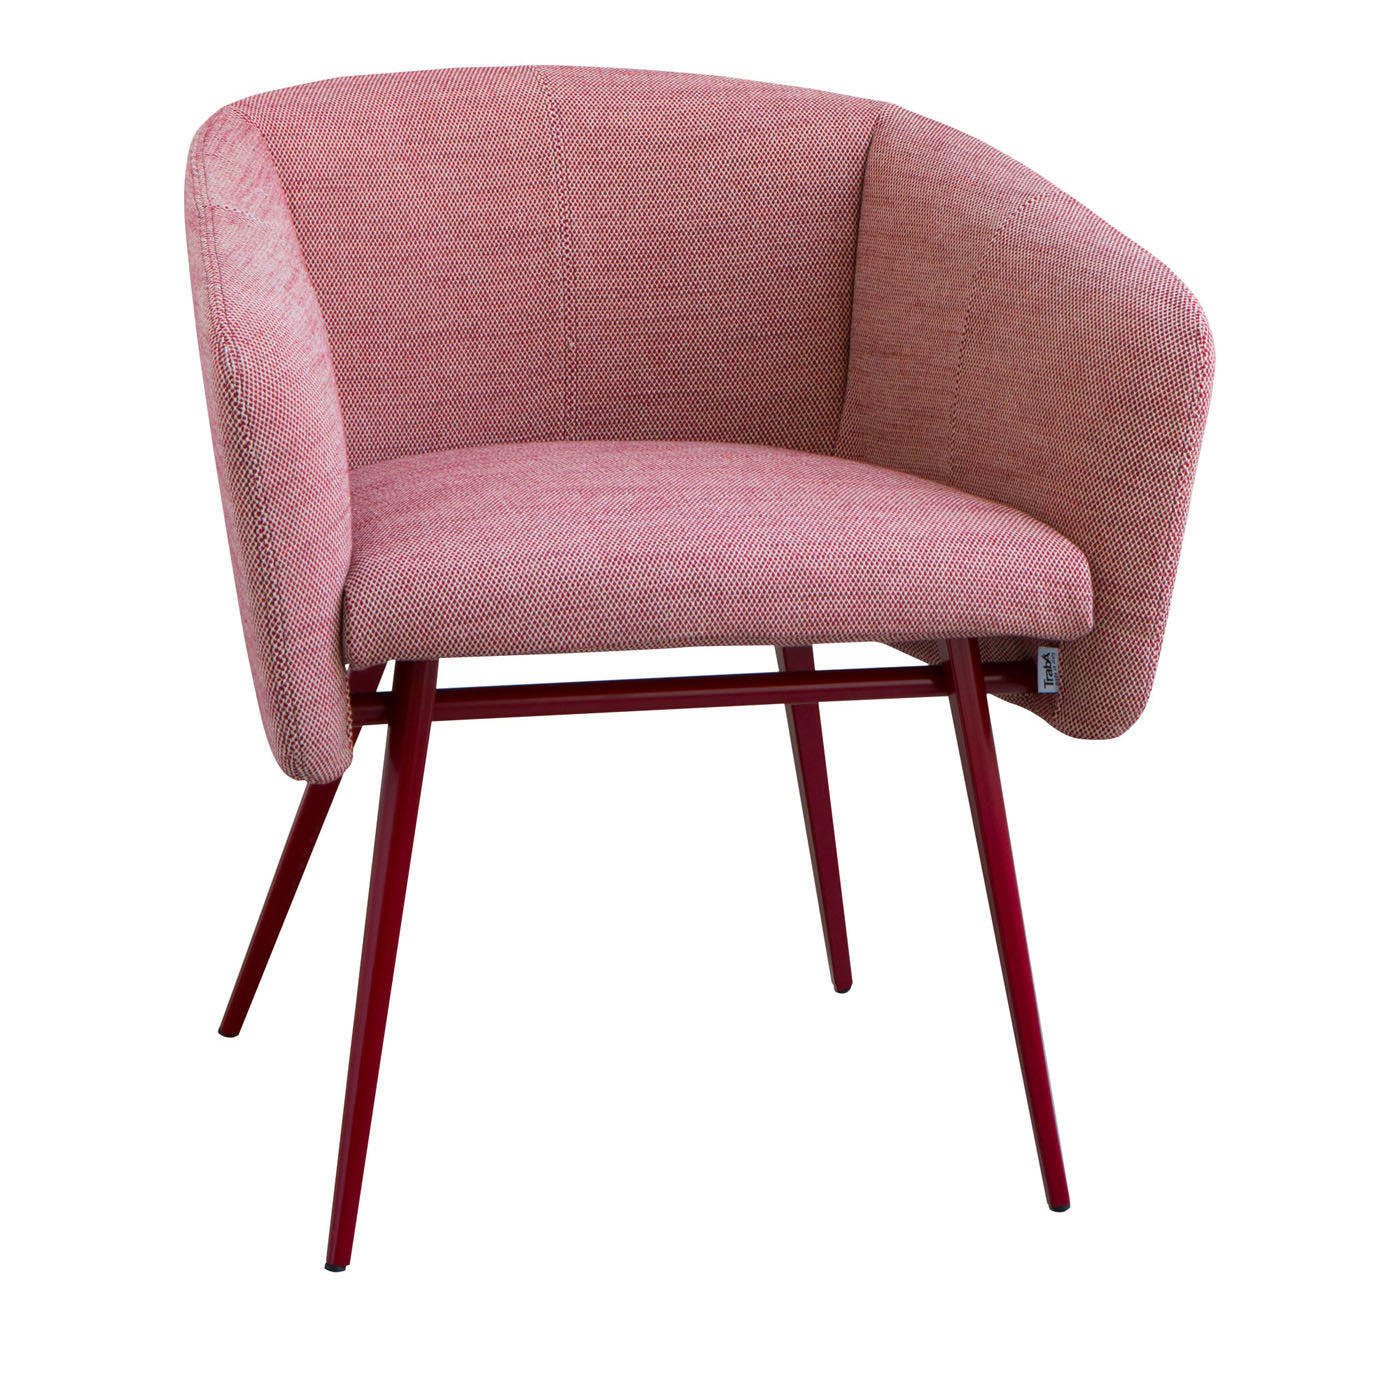 Balù Met Pink Chair By Emilio Nanni - Main view